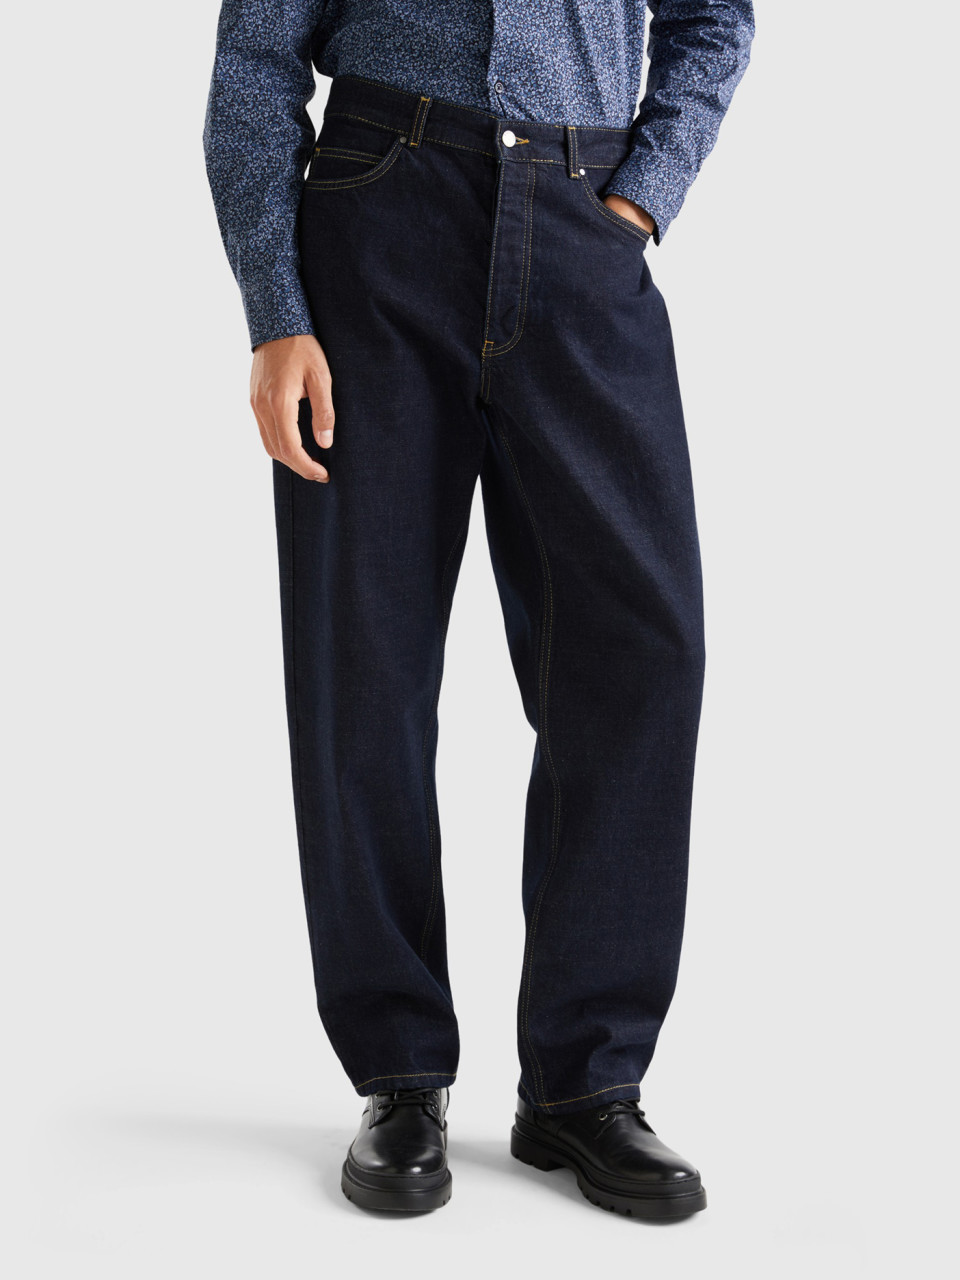 Benetton, Jeans Worker-style, Dunkelblau, male